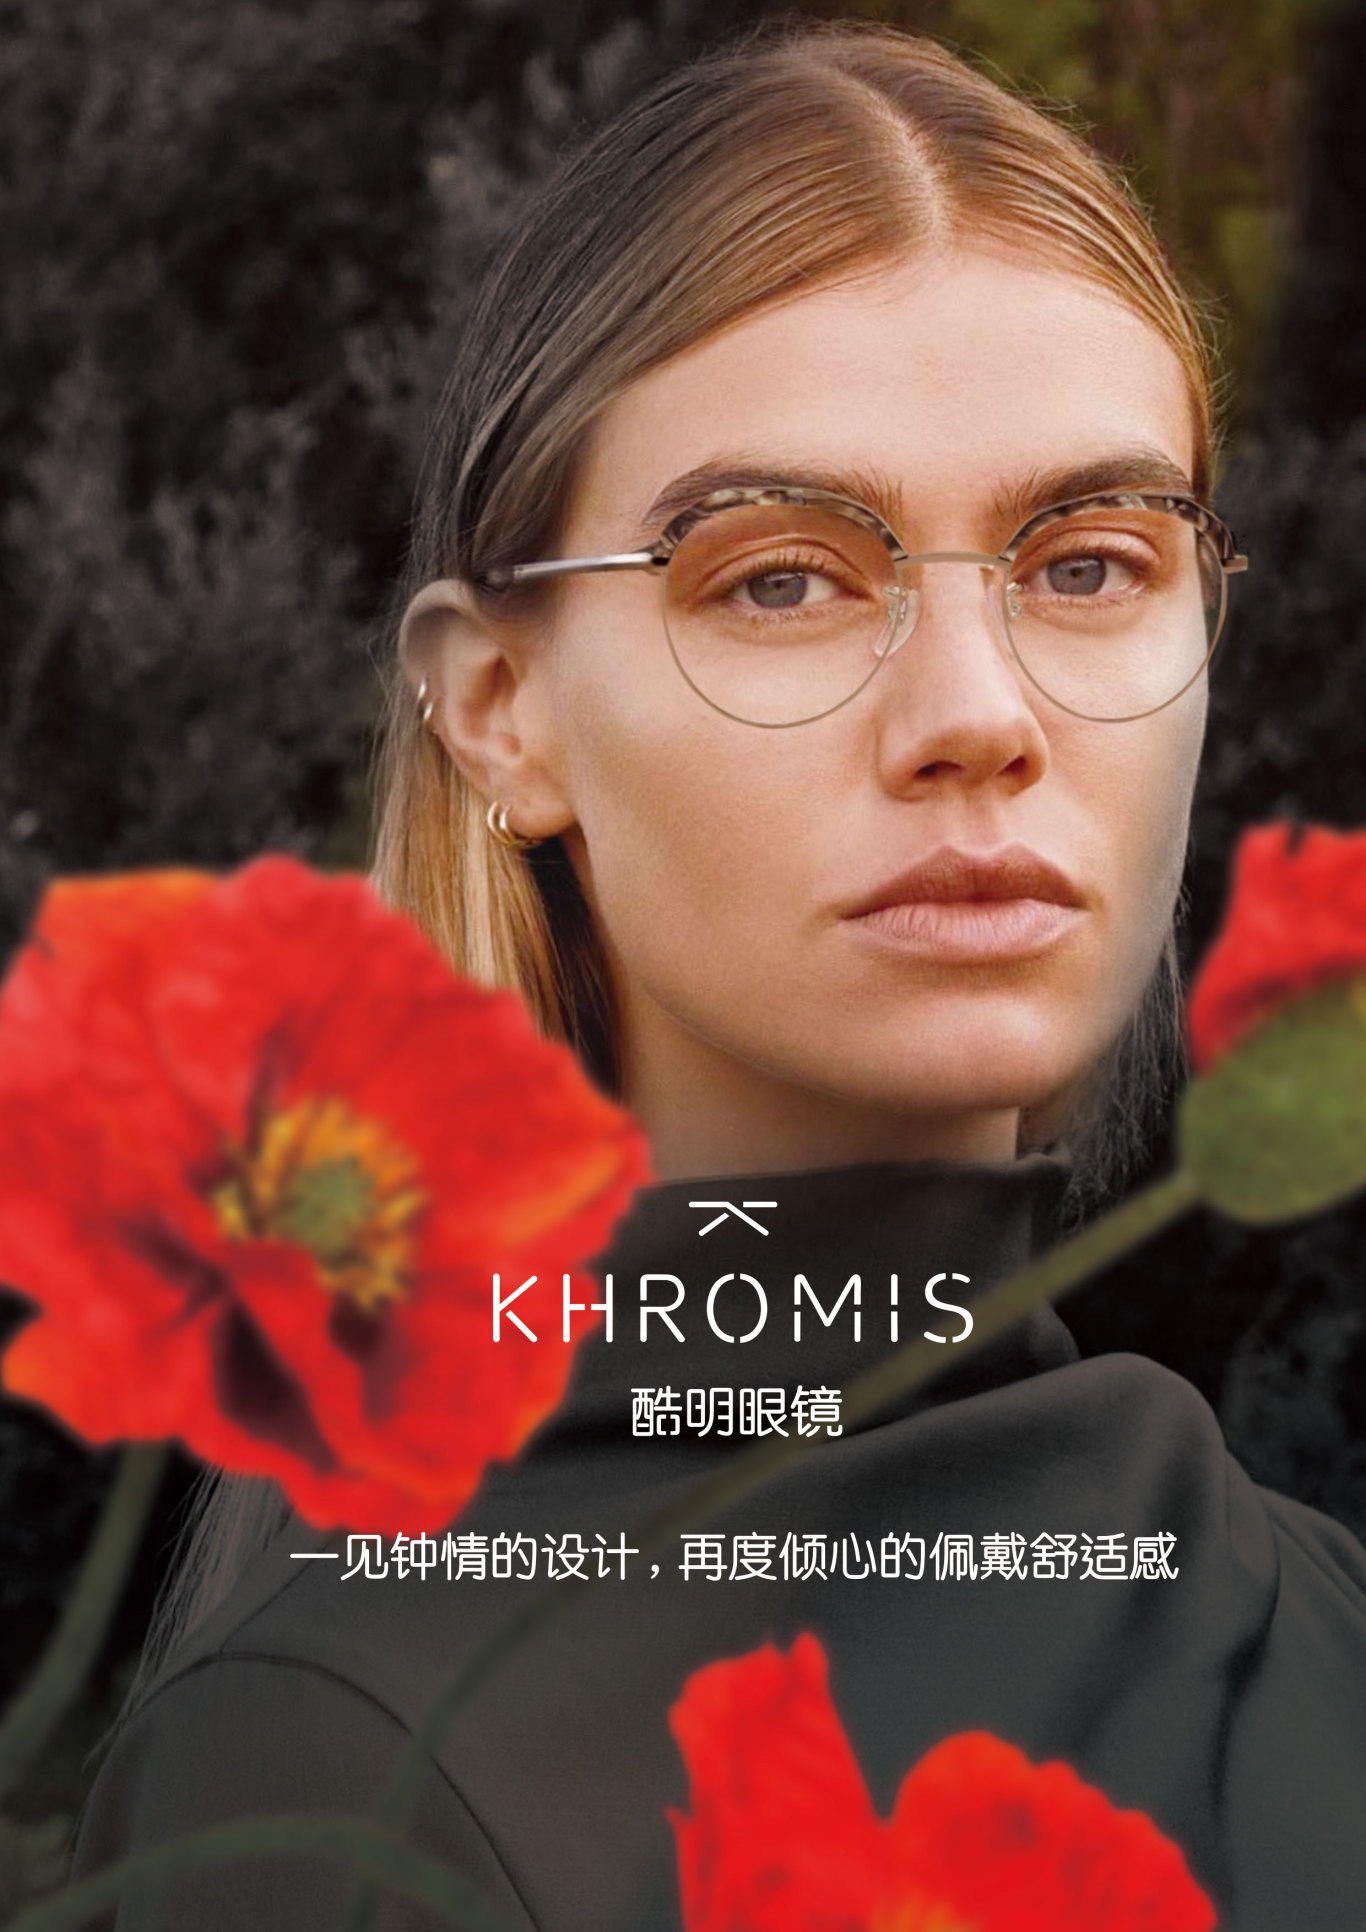 KHROMS+眼镜行业+品牌形象海报图2